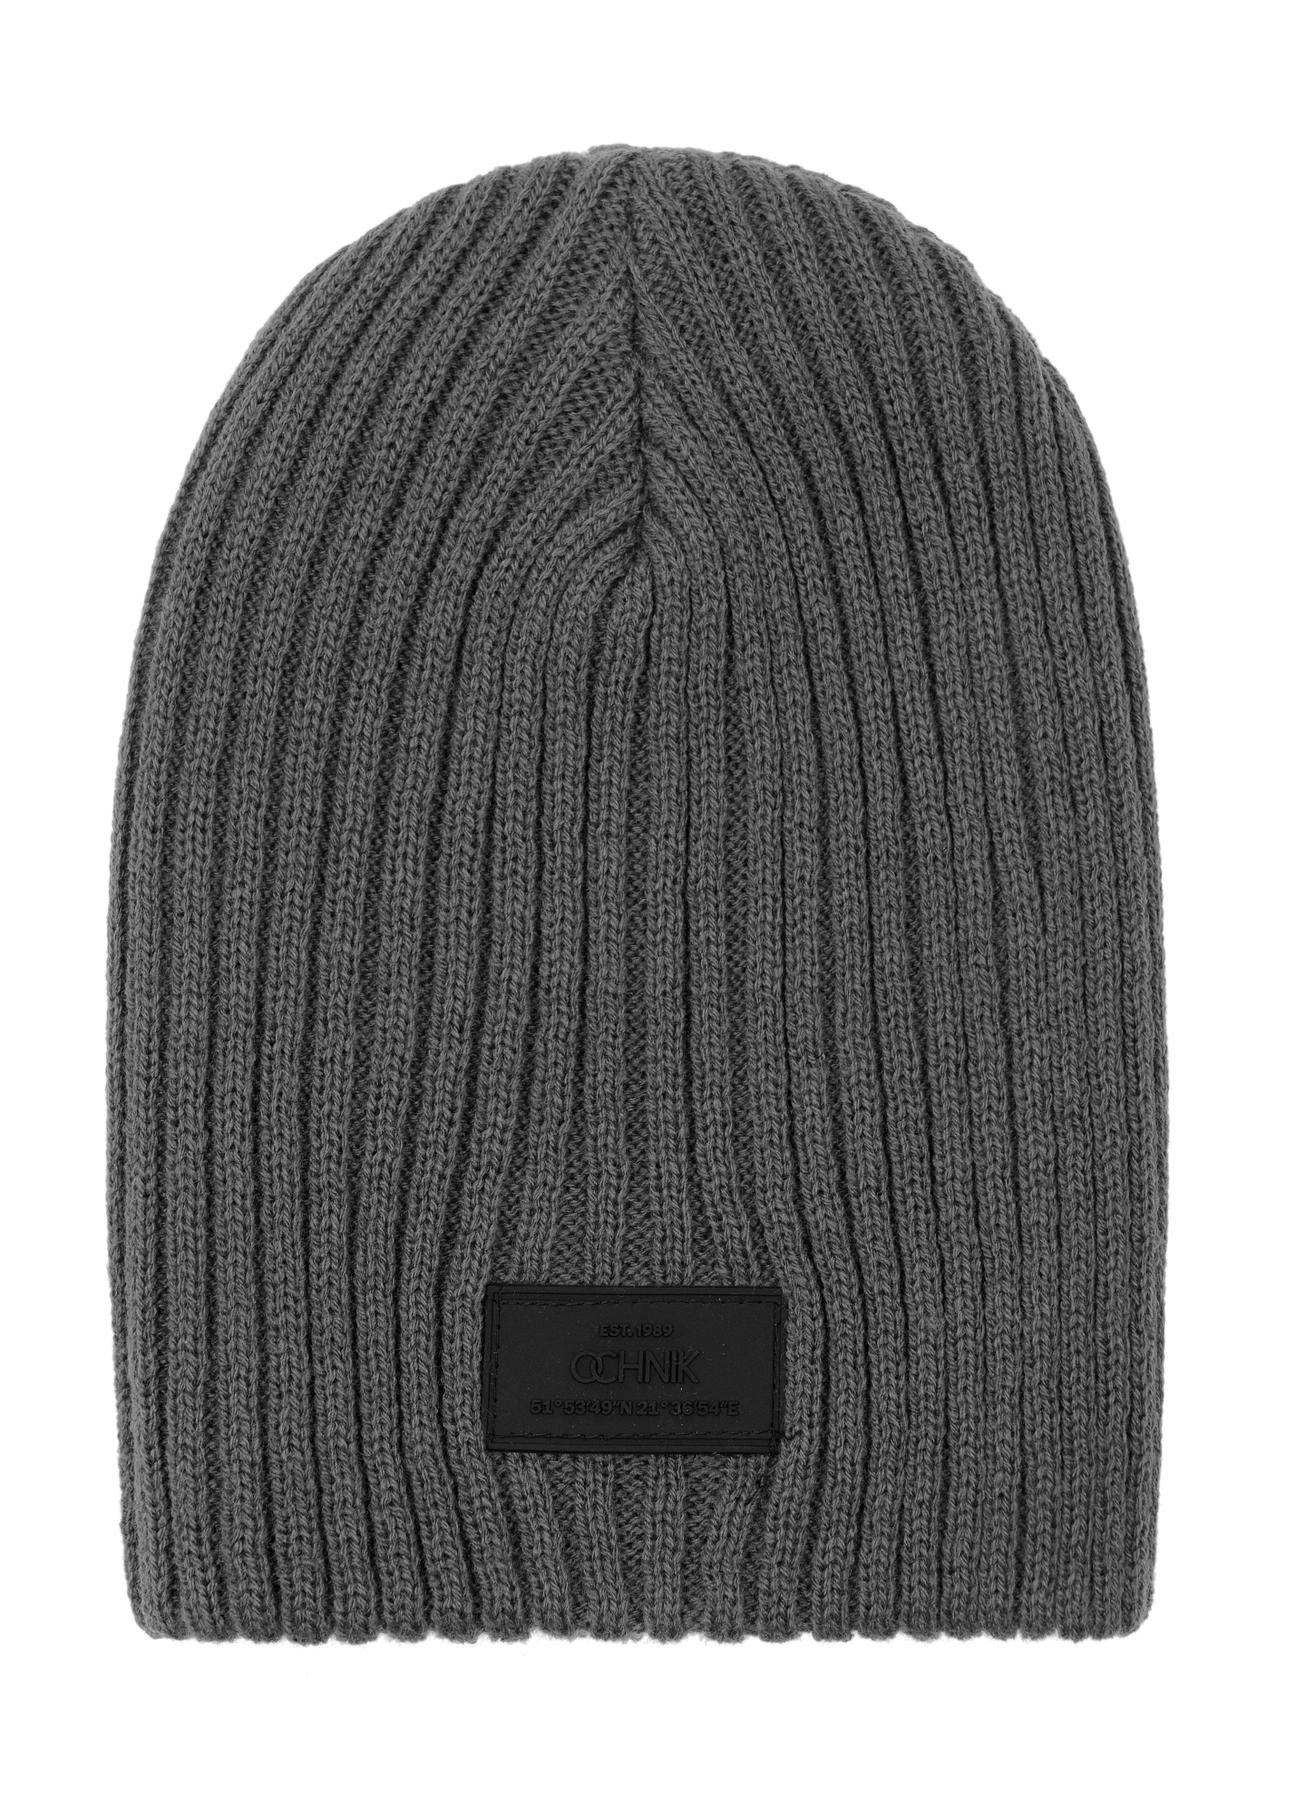 Grafitowa czapka zimowa męska CZAMT-0011-95(Z23)